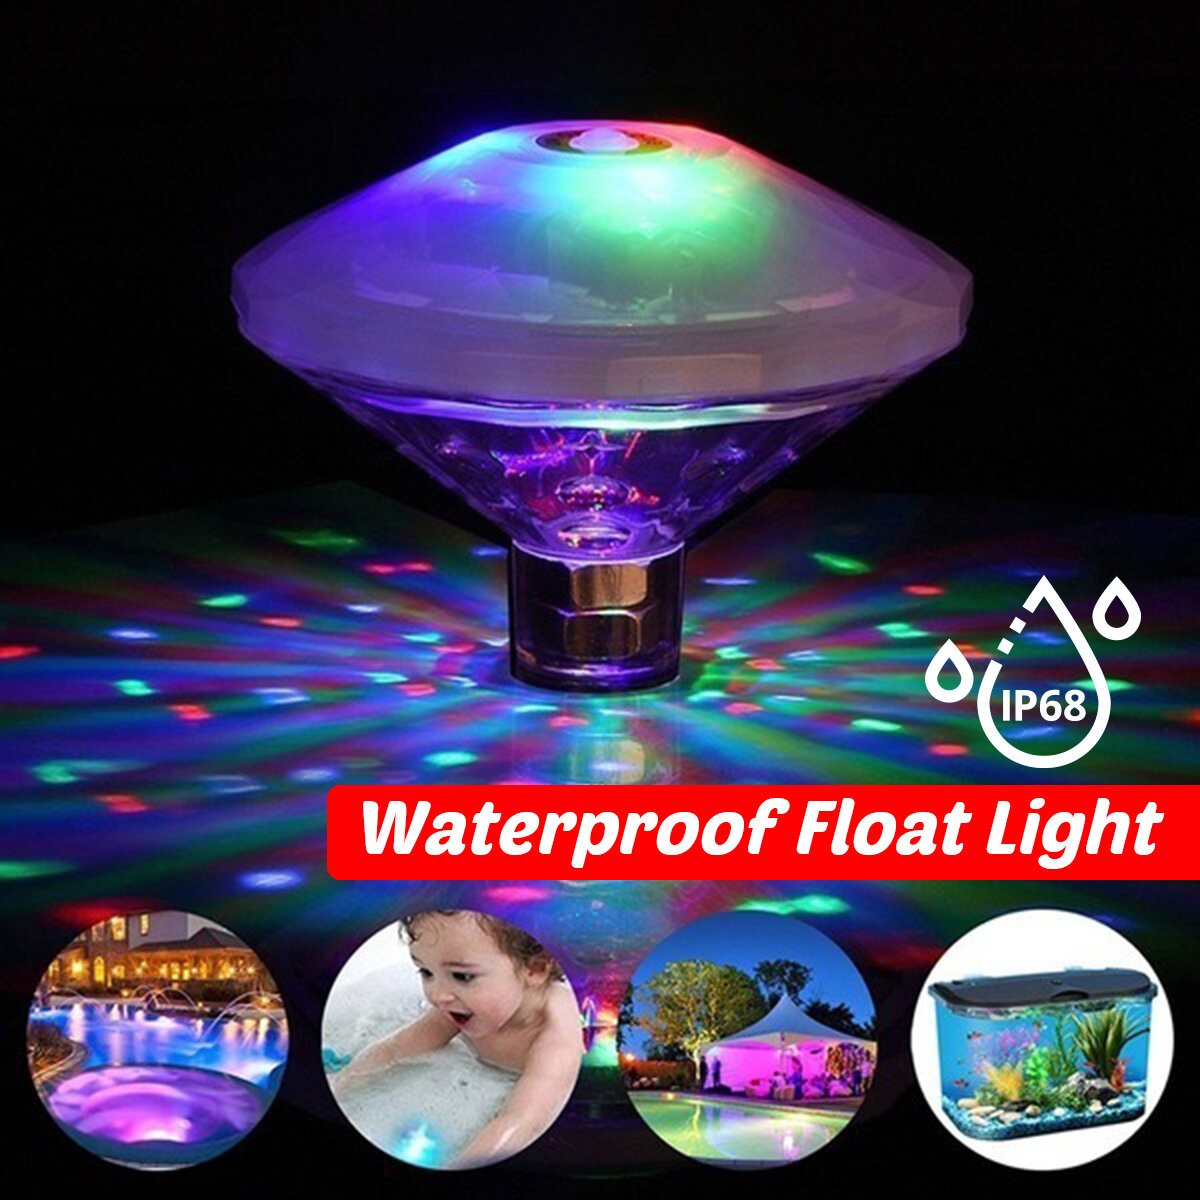 

Спа-ванна LED Плавание Бассейн Плавающий свет Colorful Подводная игрушка для детской ванны Водонепроницаемы Лампа